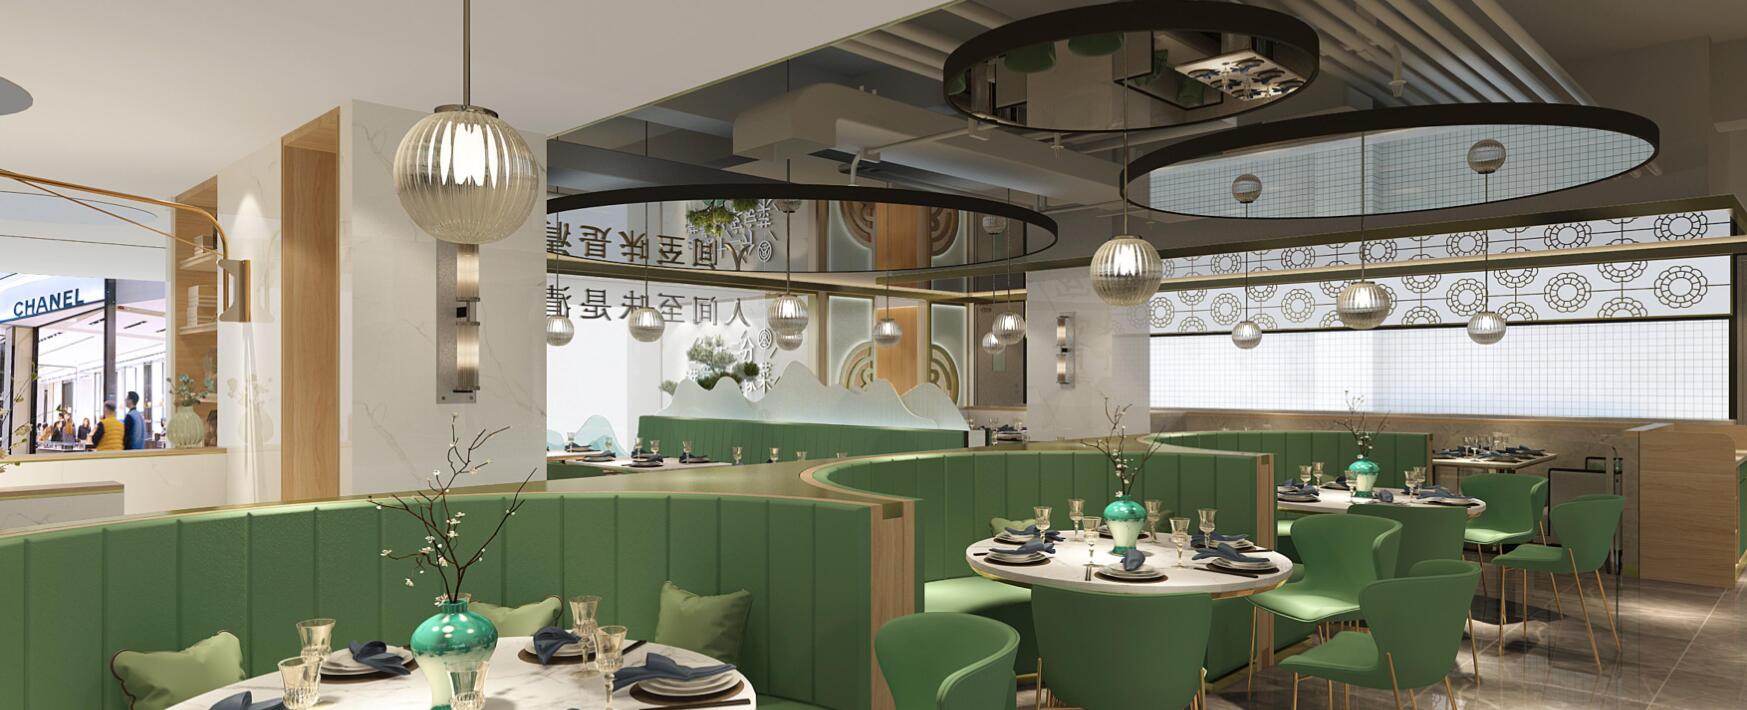 餐饮空间设计,深圳品牌设计,深圳餐饮设计,空间设计